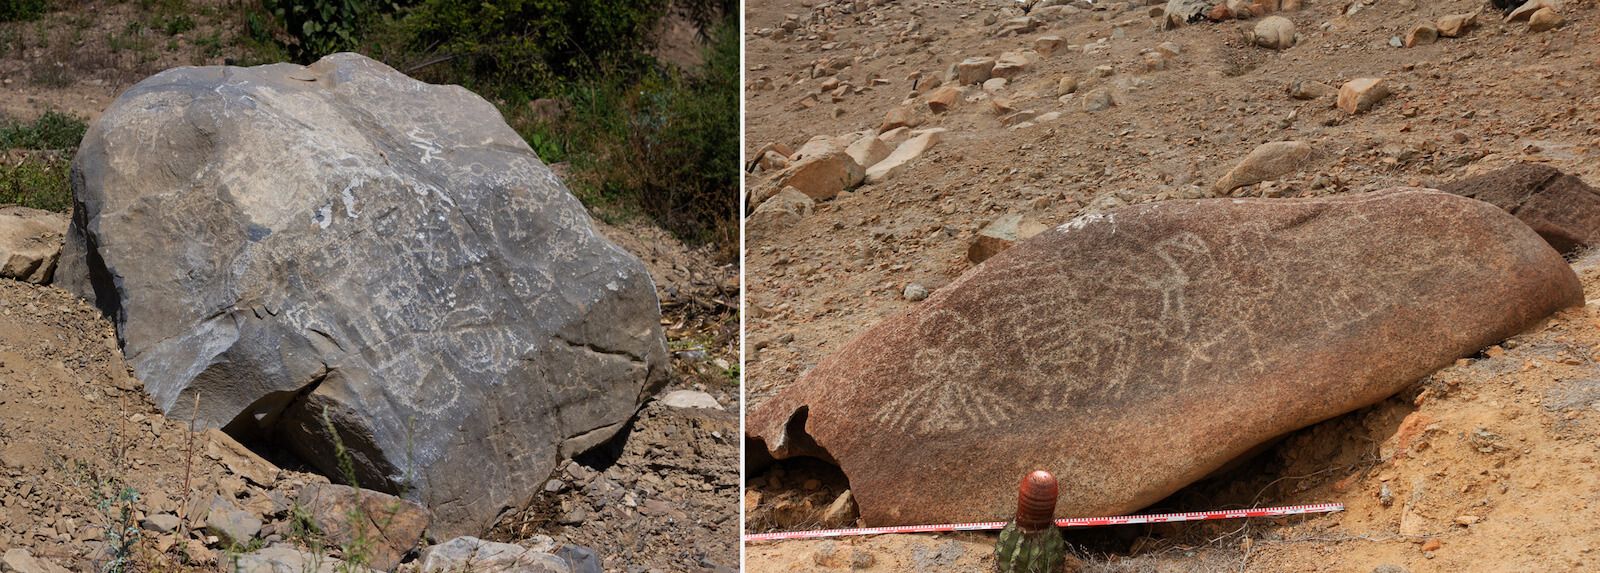 Arqueología del arte rupestre en los Andes Centrales de Perú